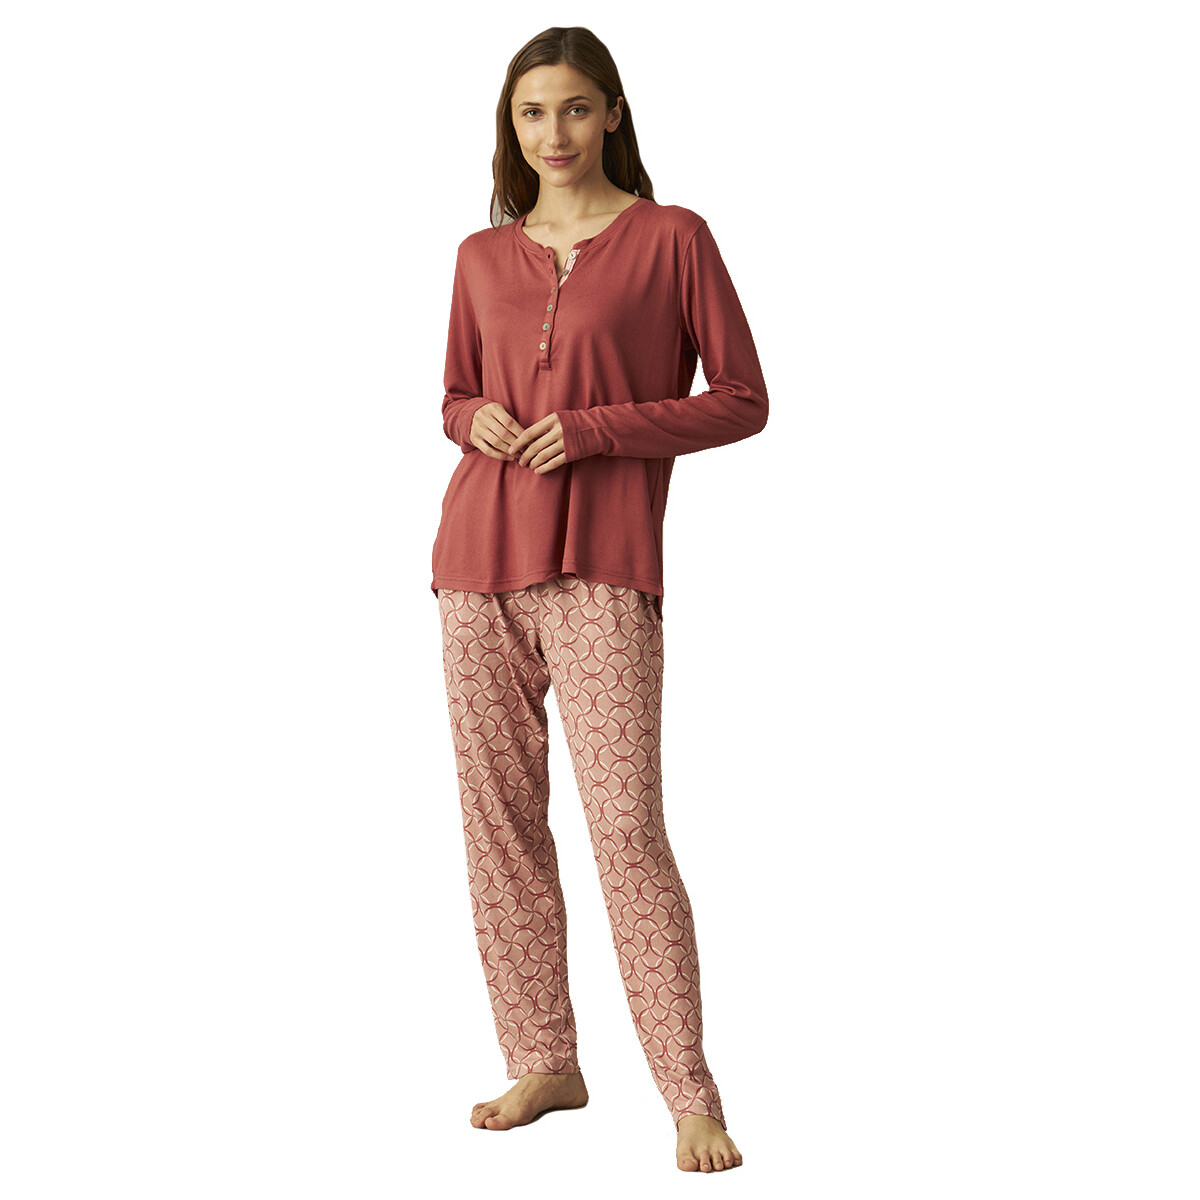 Vêtements Femme Pyjamas / Chemises de nuit J&j Brothers JJBCP0201 Rouge